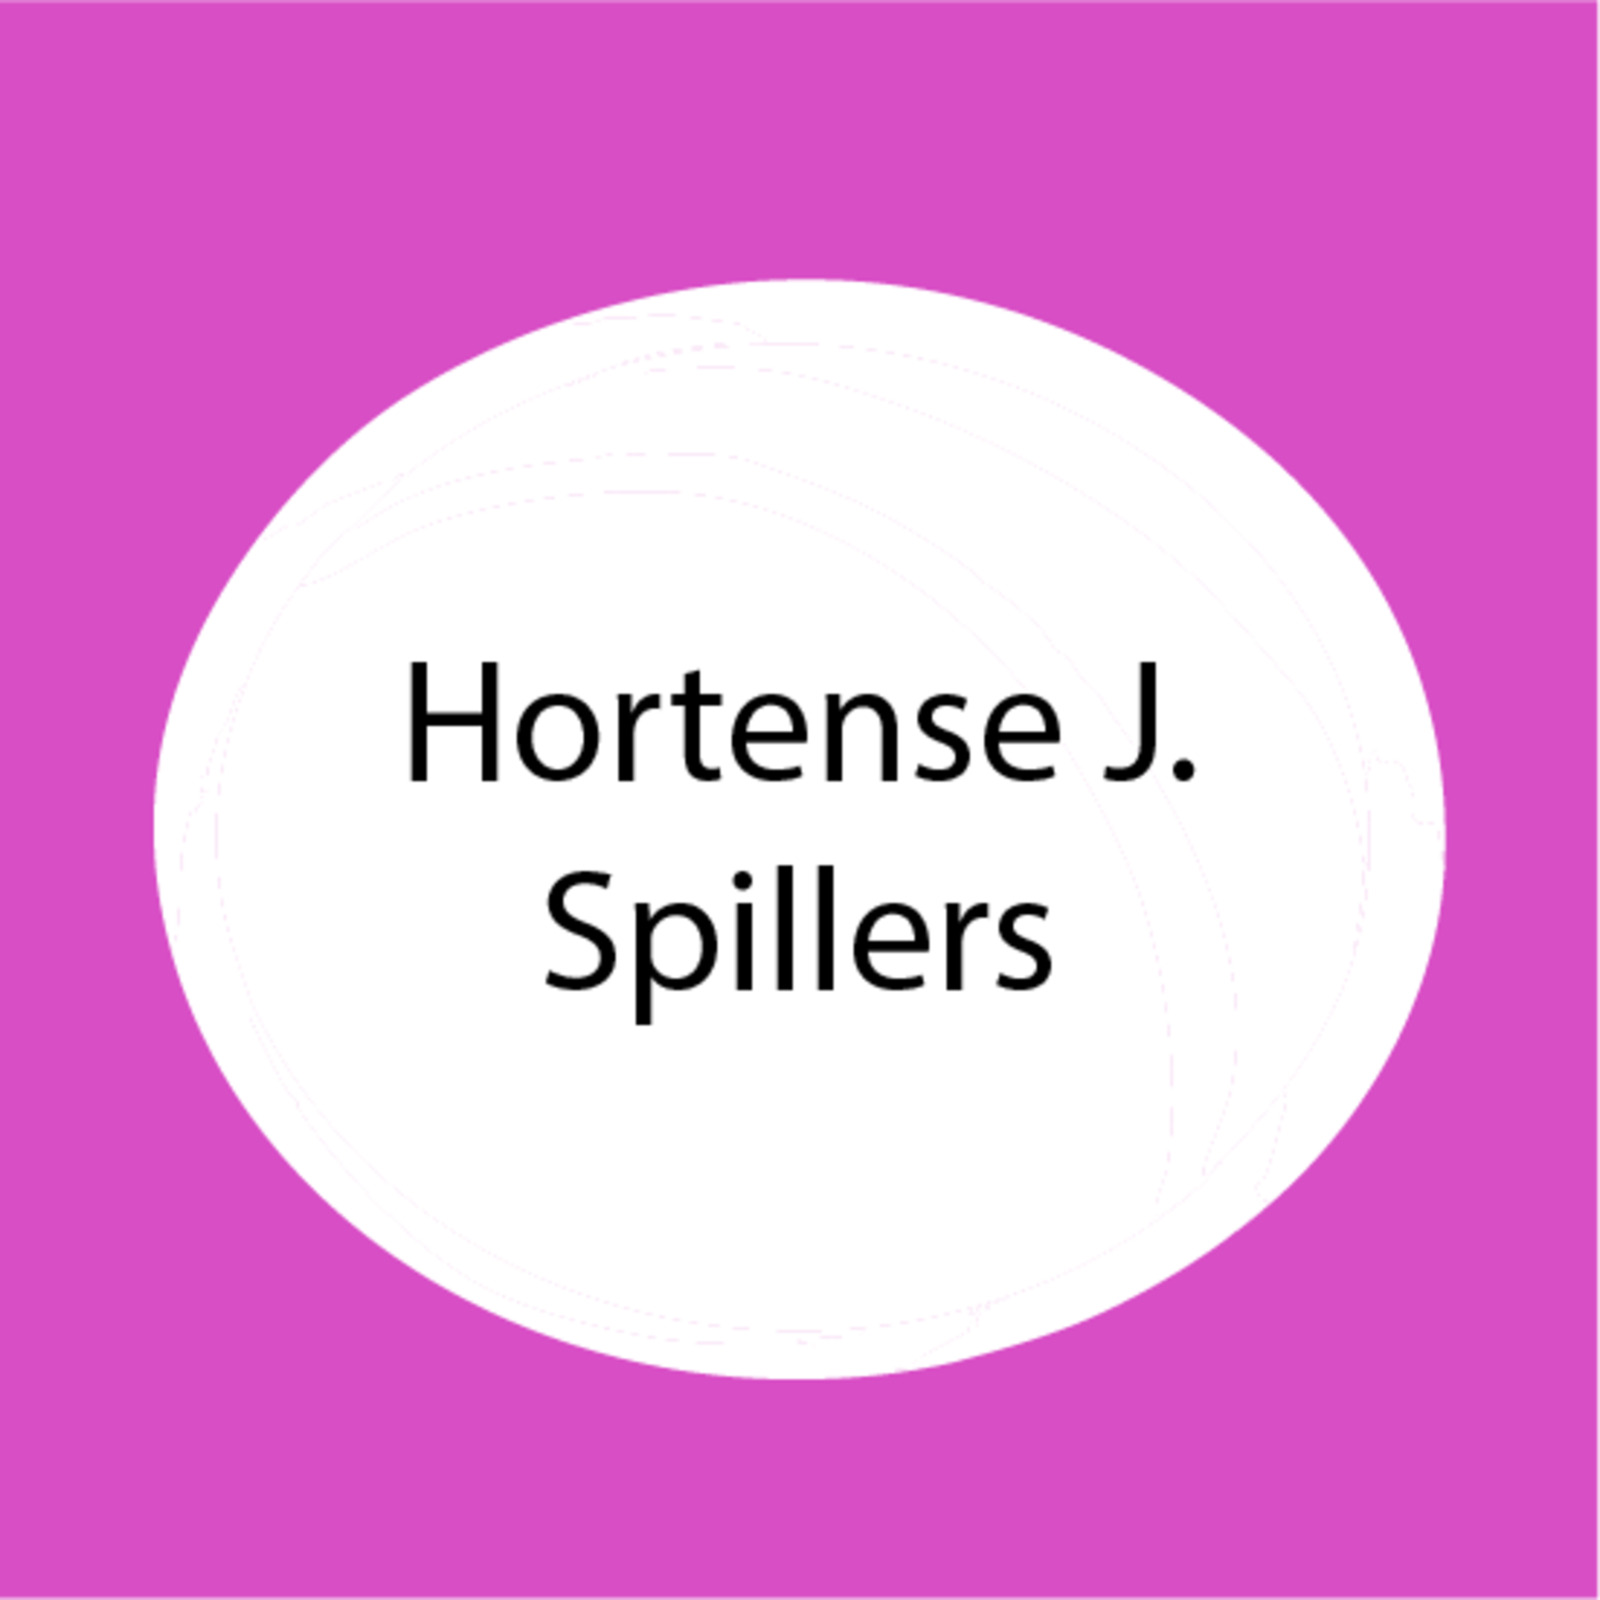 Hortense J. Spillers